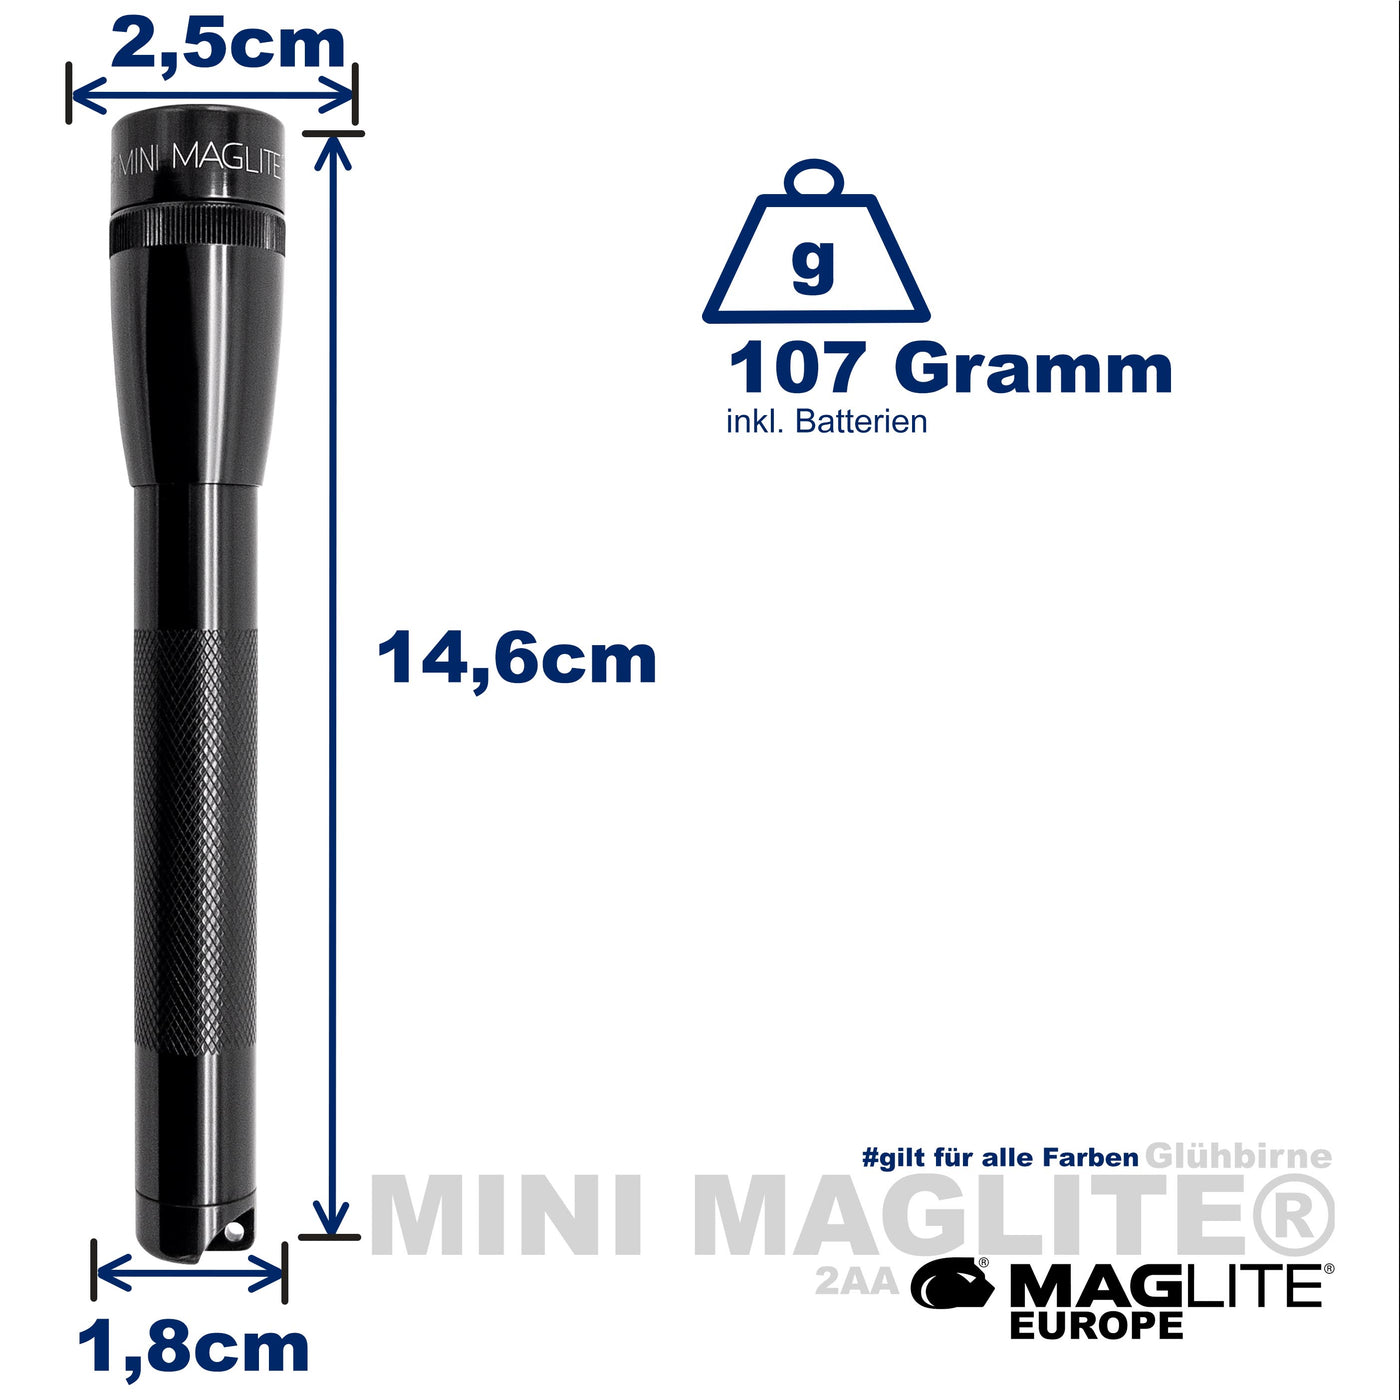 Mini Maglite® AA Incandescent